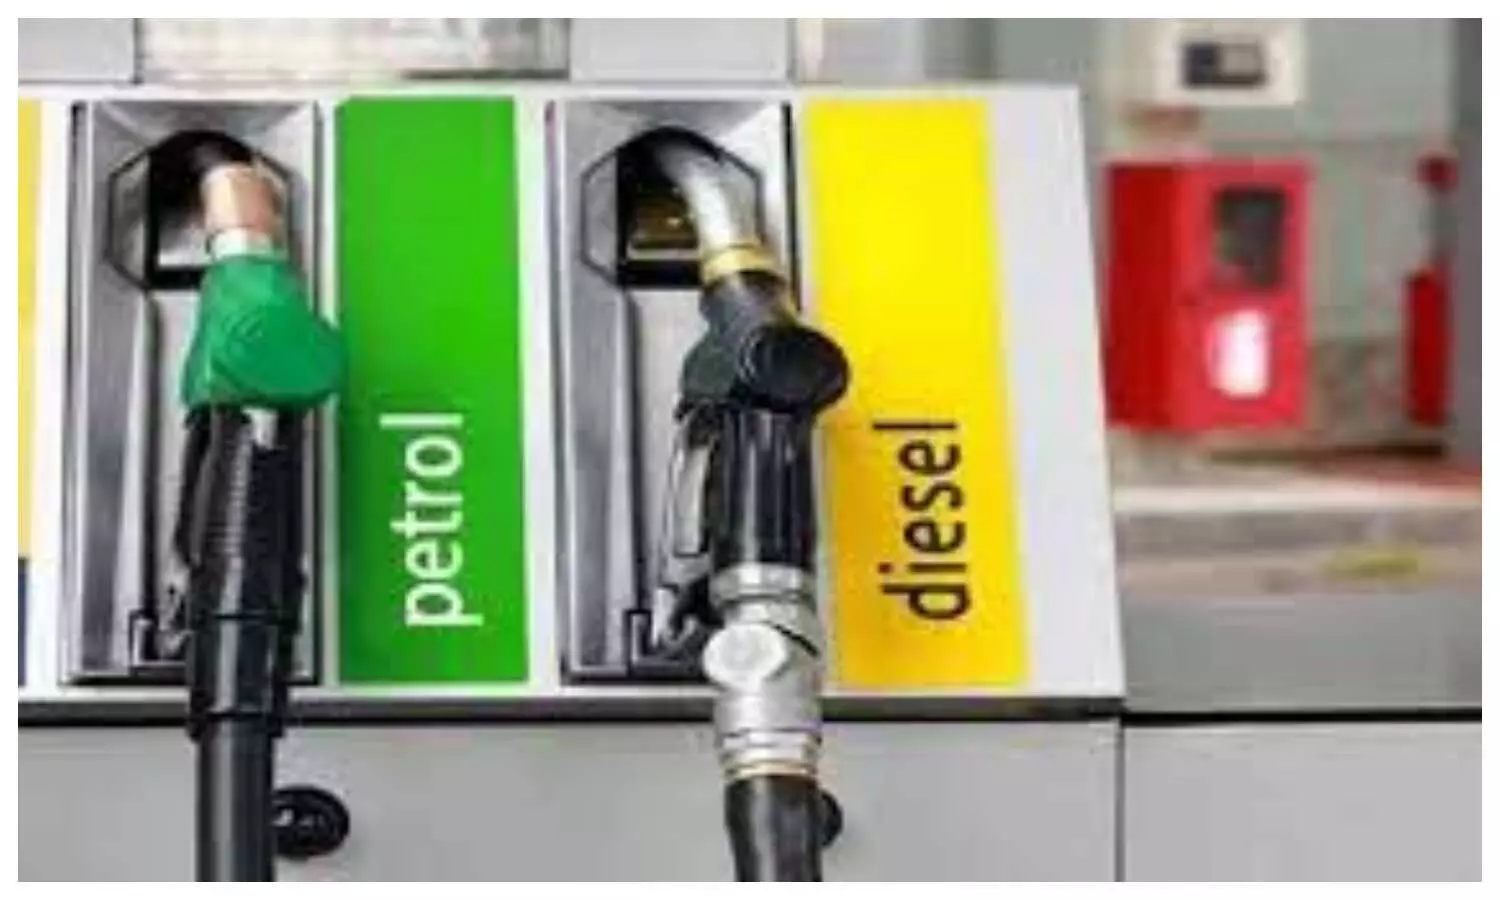 UP Petrol Diesel Price Today: